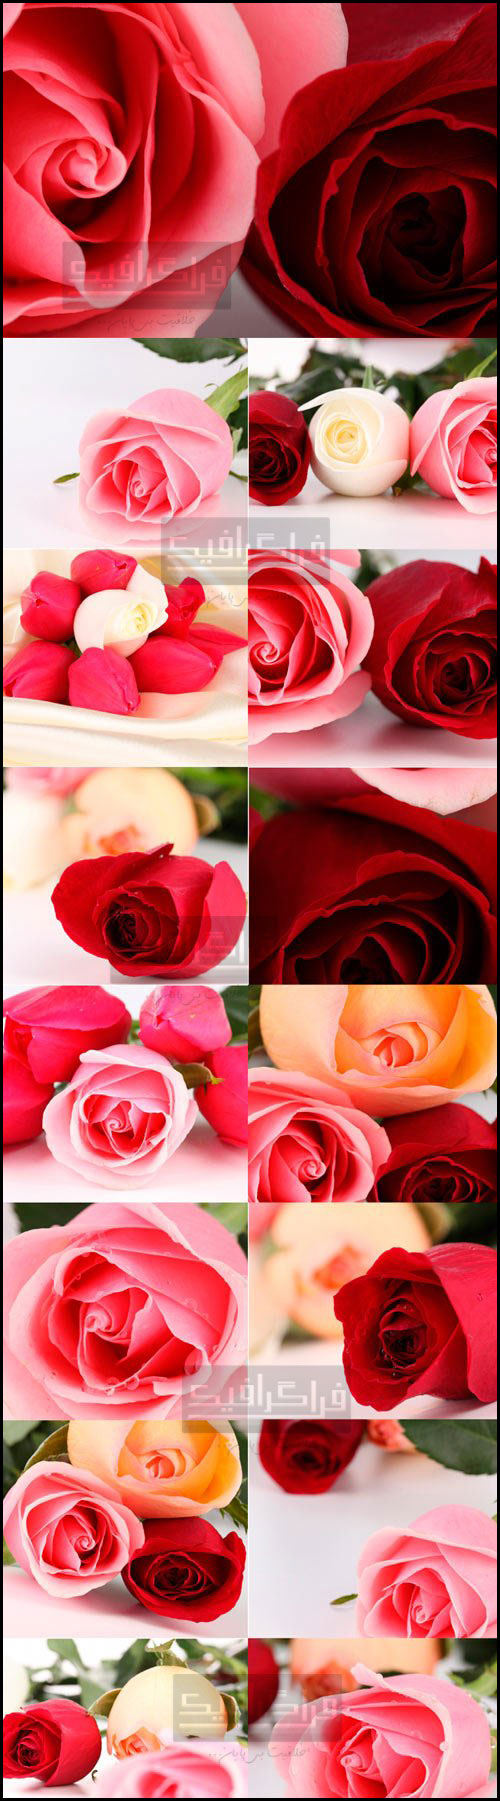 دانلود تصاویر استوک گل رز قرمز و صورتی